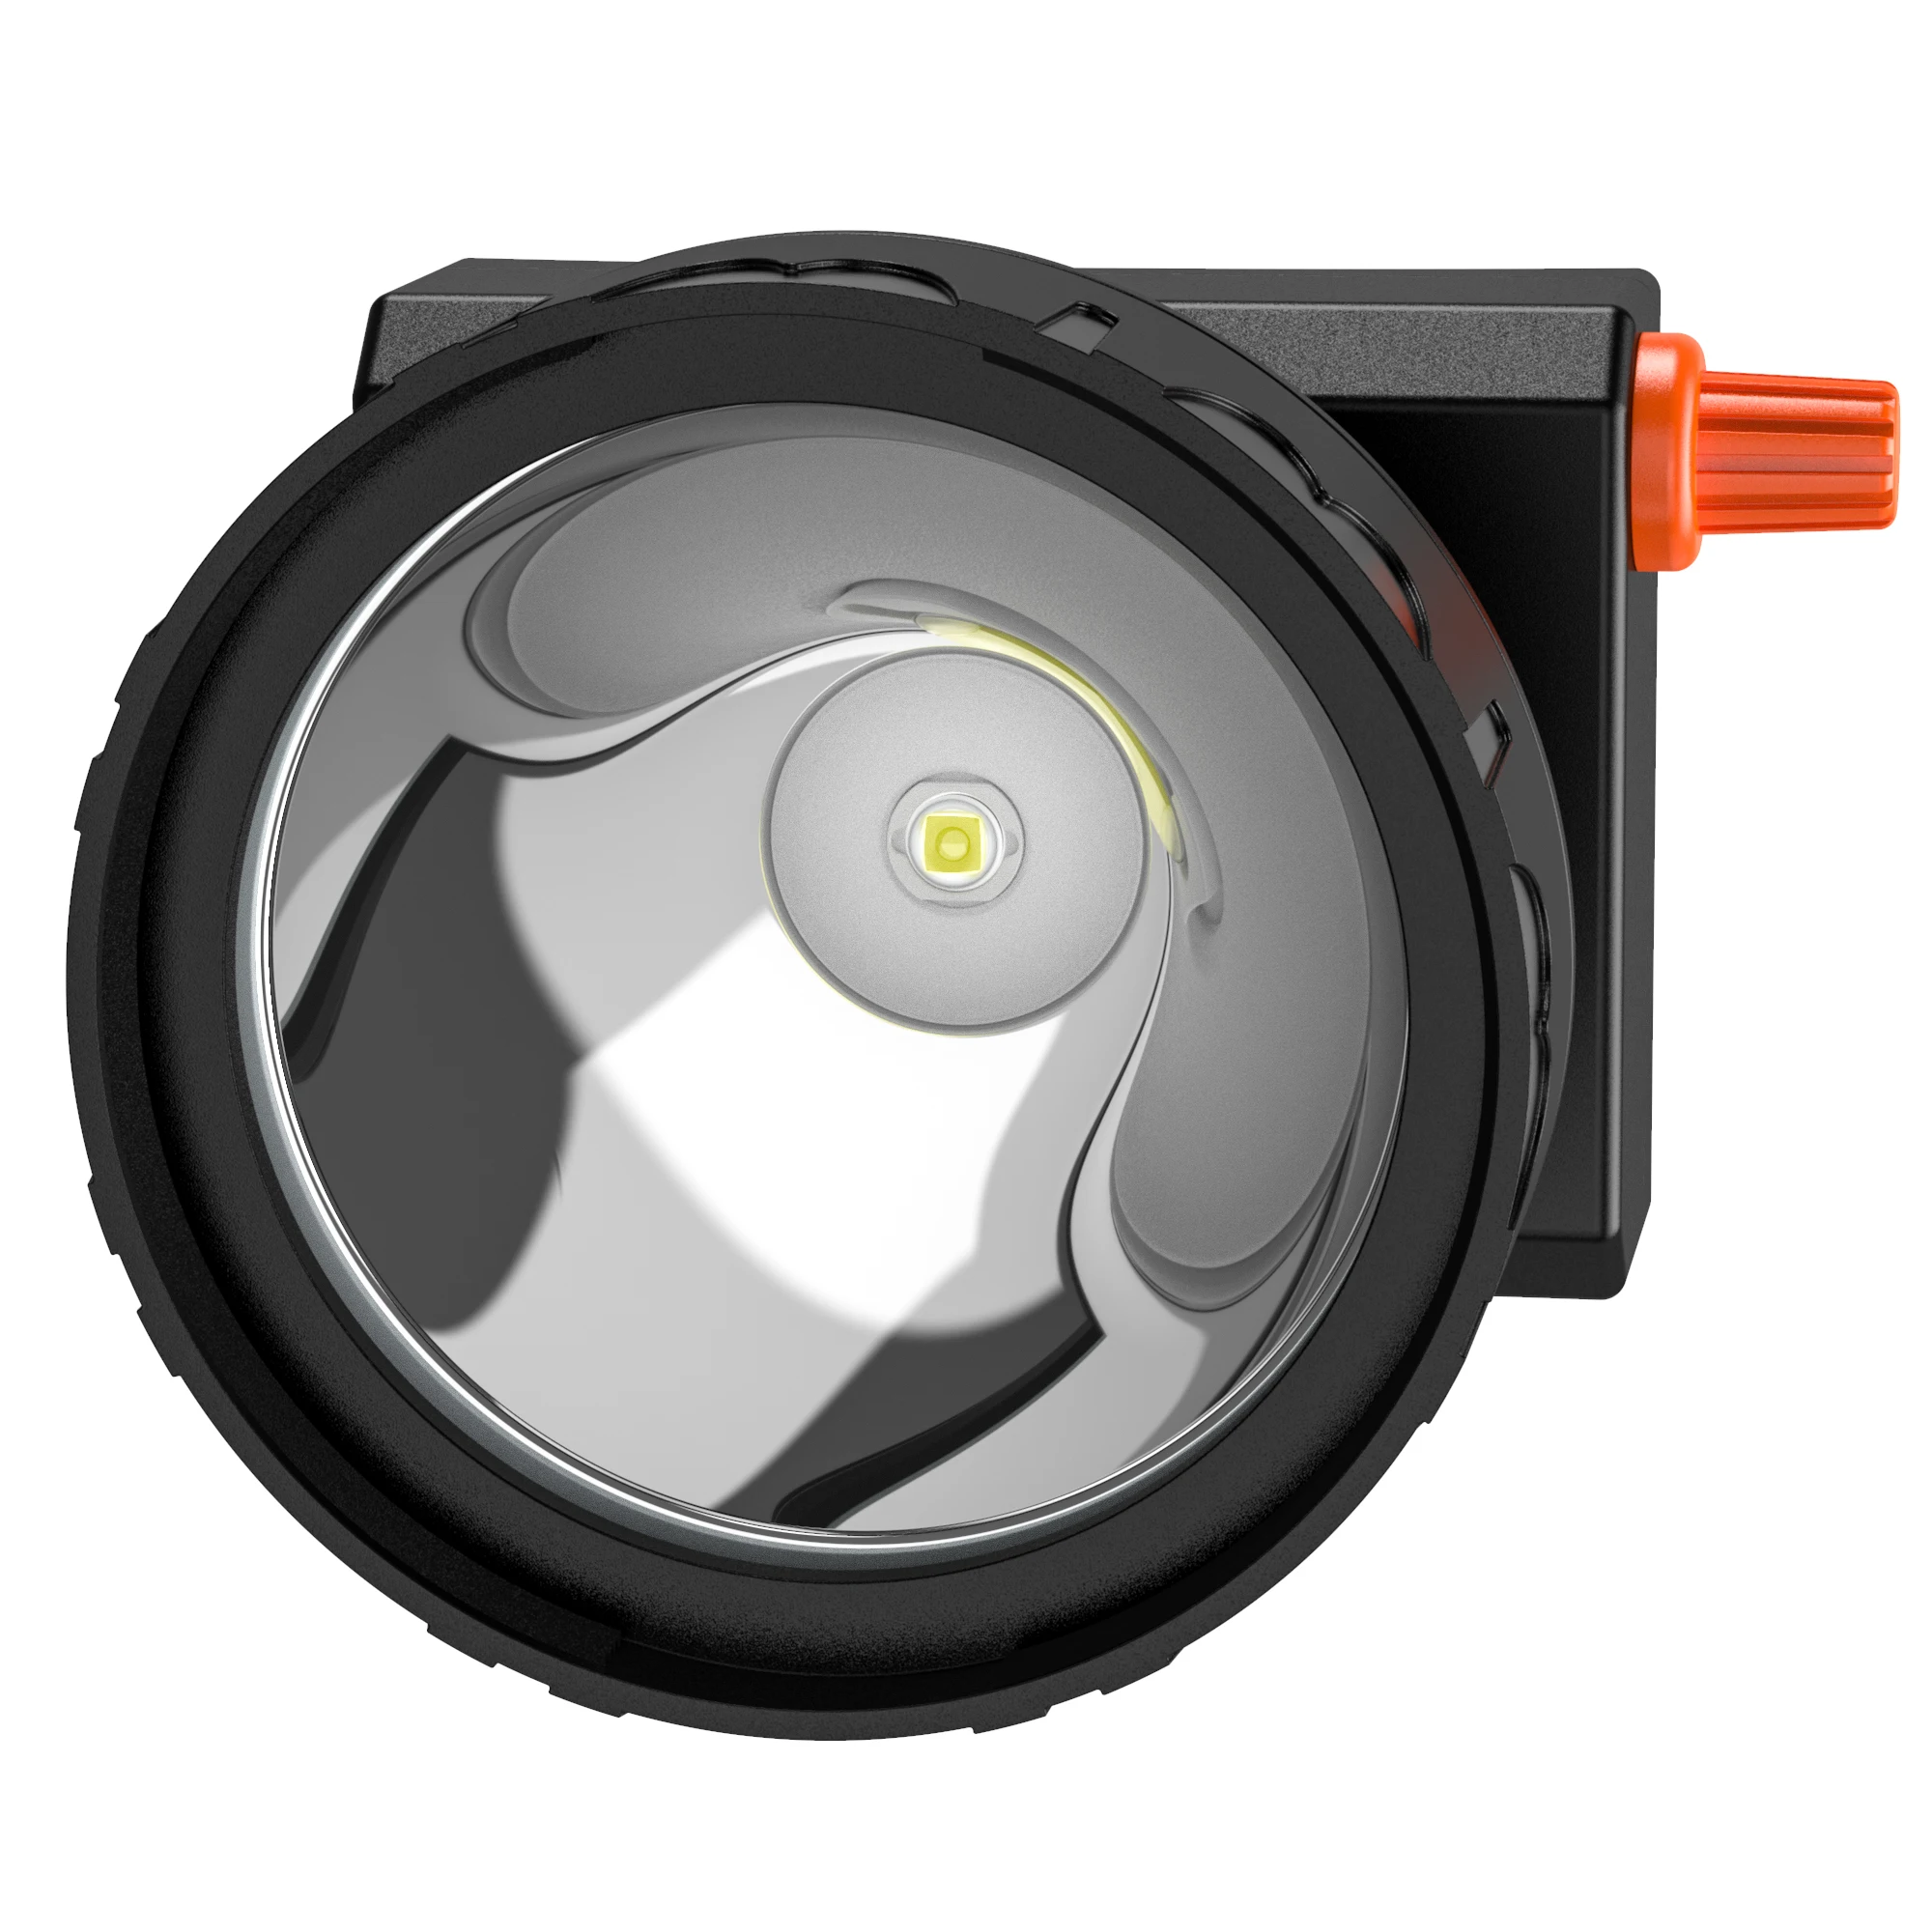 Kohree светодиодный налобный фонарь Cree с регулируемой яркостью, 8 Вт, USB, автомобильное зарядное устройство, 4400 мАч, фара для шахтера, охоты, кемпинга, рыбалки, водонепроницаемый, IP68, 12 часов